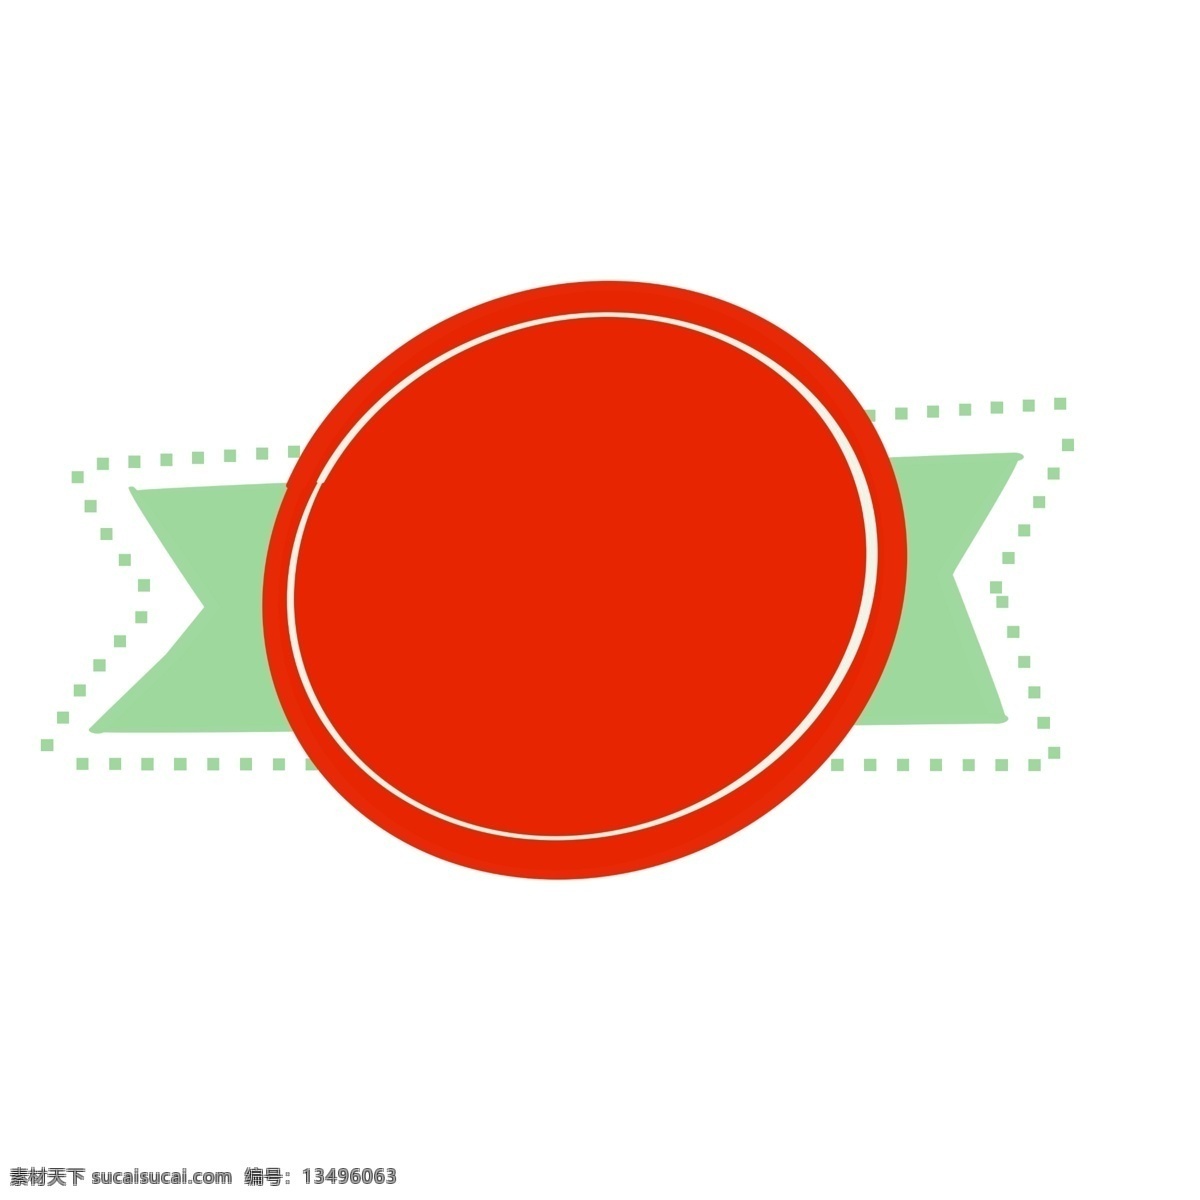 手绘 对话框 圣诞 色 圆形 简单 可爱 对话款 简约 框 红色 绿色 波动对话框 简单对话框 不规则手绘 圆形对话框